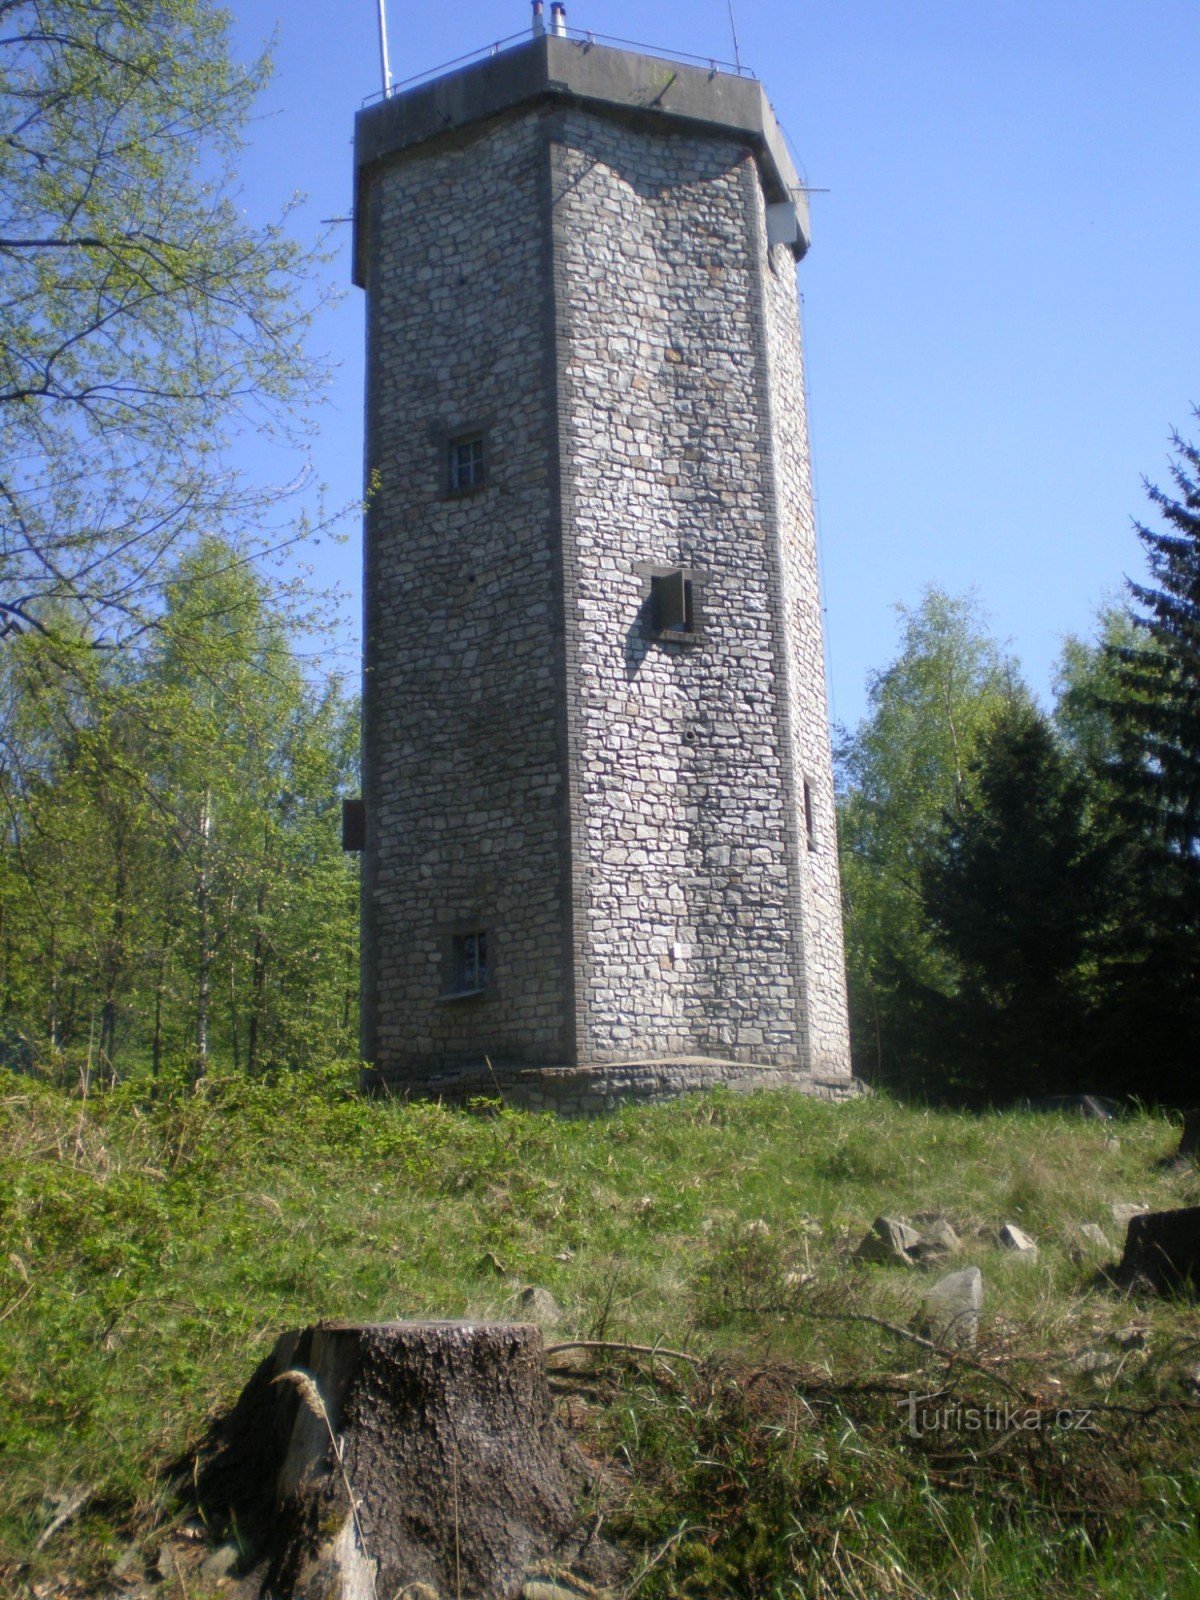 Studený vrch (660m), torre de observação